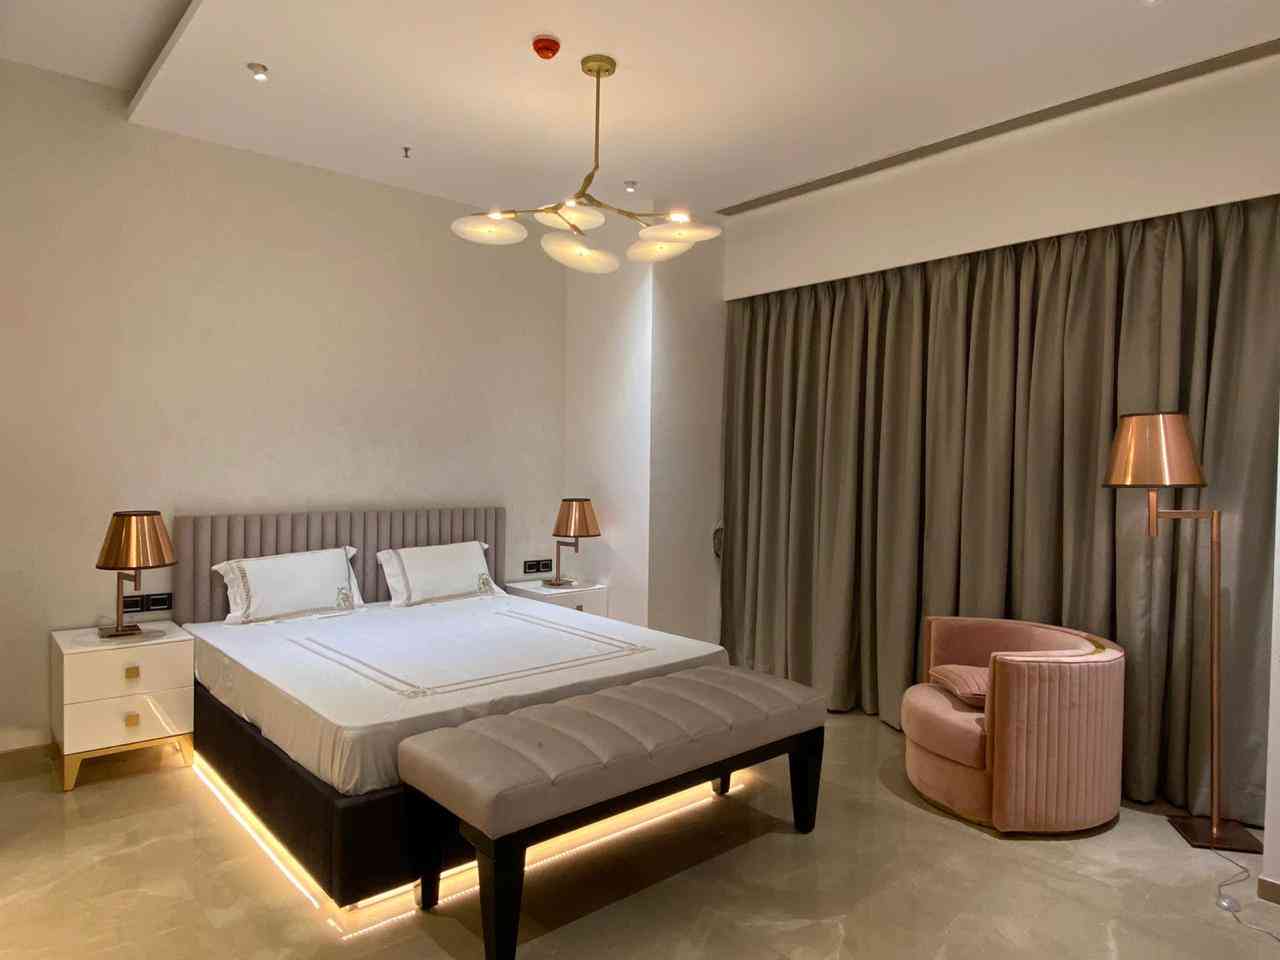 Luxury Master Bedroom Design With Creamy White Interiors